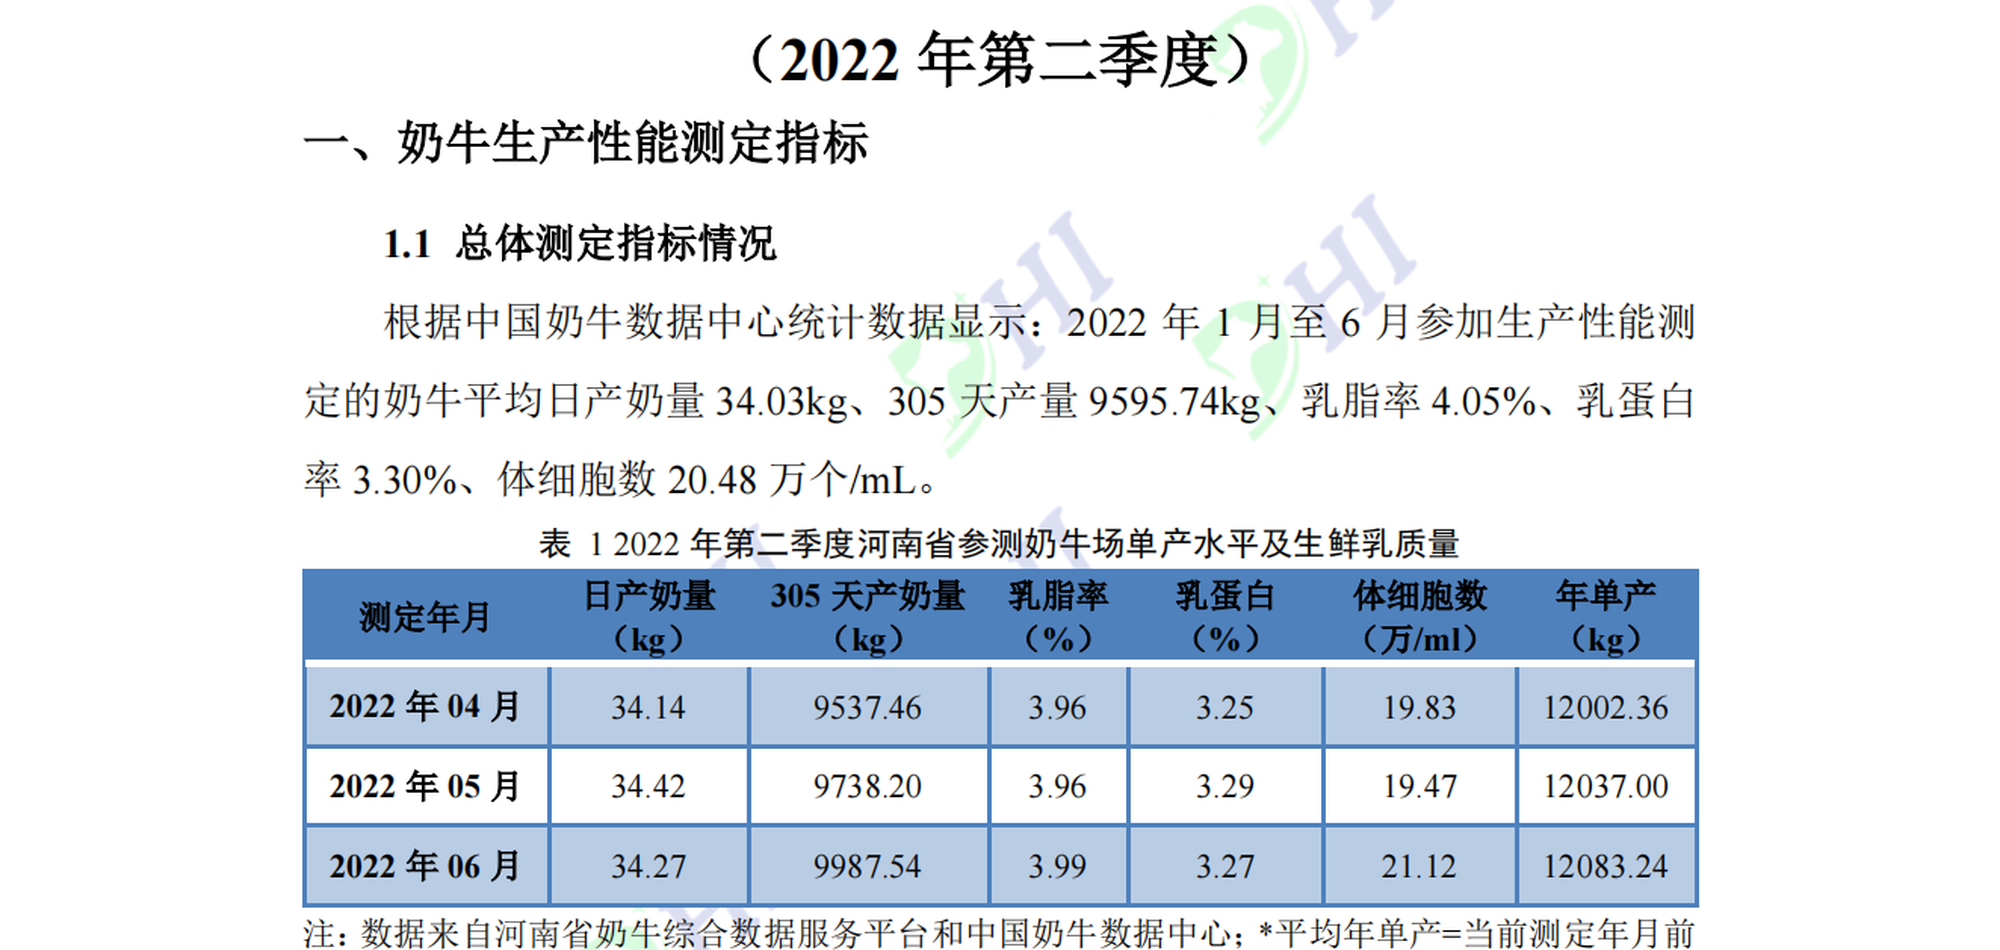 河南省奶业形势及DHI测定情况分析 （2022年第2季度报告）7.21